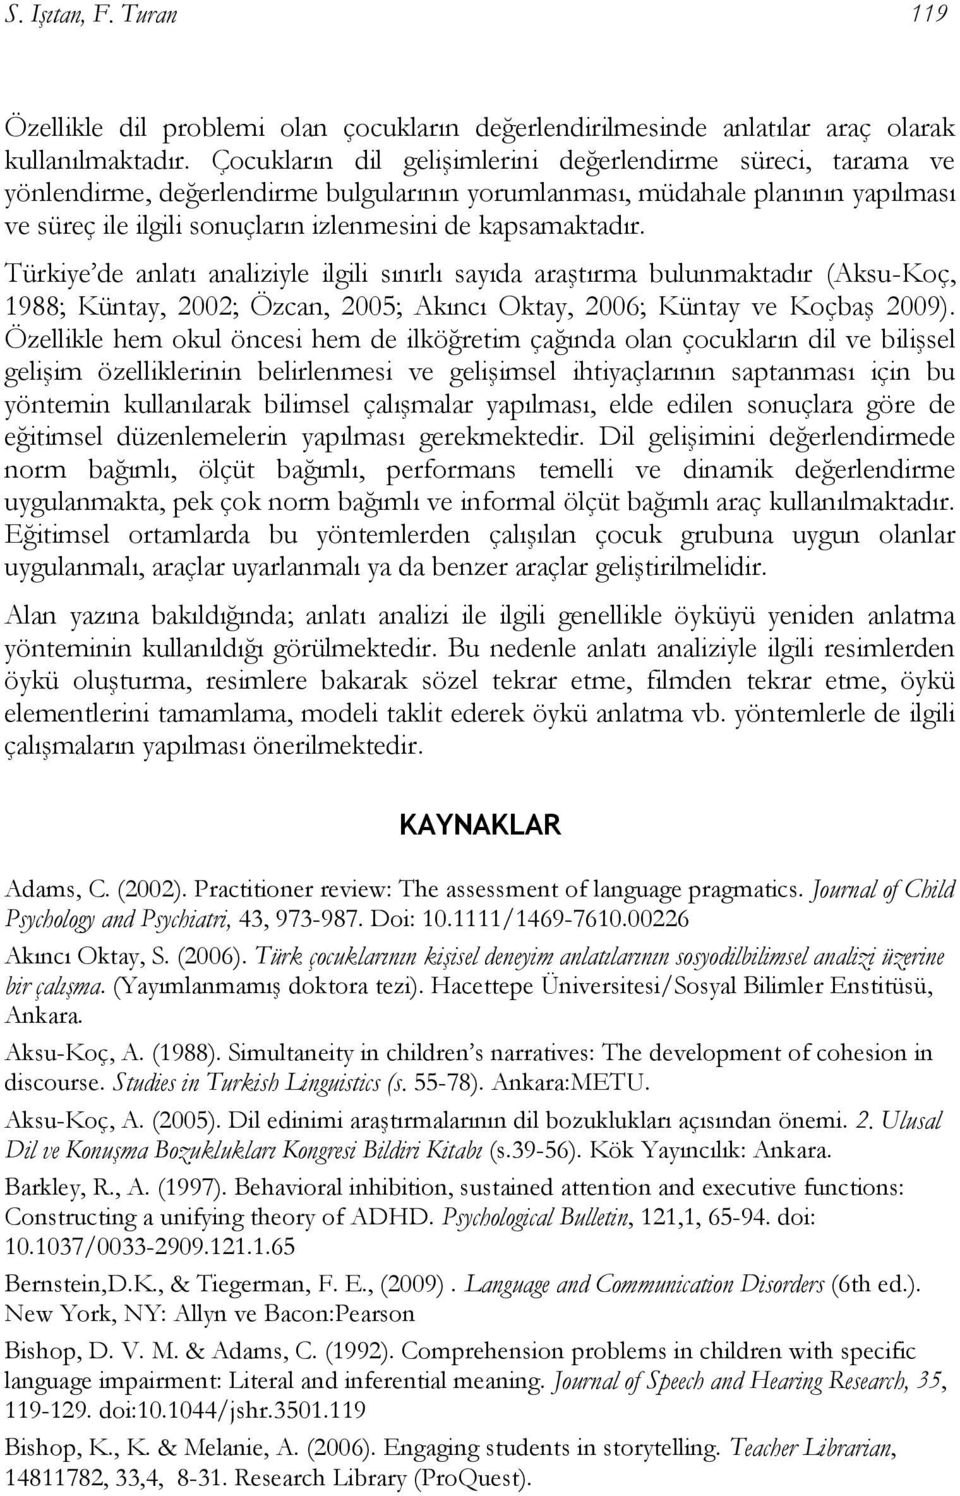 kapsamaktadır. Türkiye de anlatı analiziyle ilgili sınırlı sayıda araştırma bulunmaktadır (Aksu-Koç, 1988; Küntay, 2002; Özcan, 2005; Akıncı Oktay, 2006; Küntay ve Koçbaş 2009).